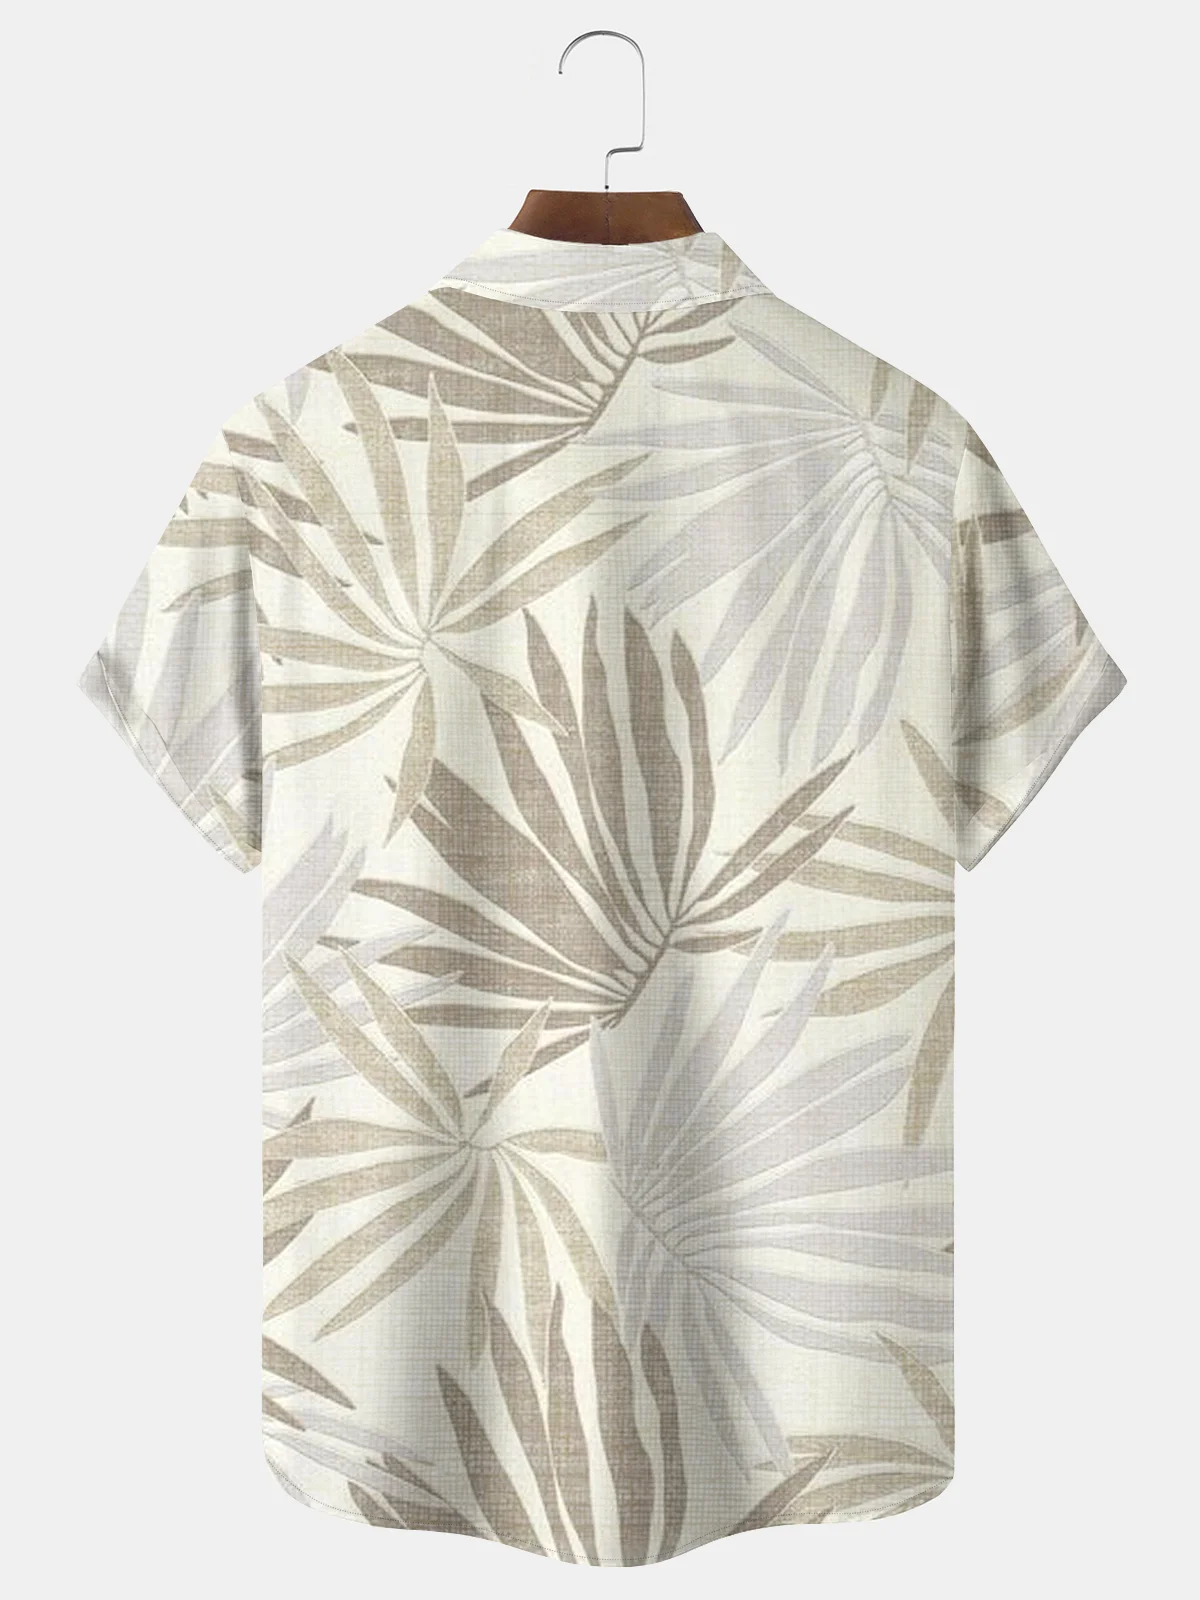 Royaura Natural Fiber Plant Leaf Print Men's Vacation Hawaii Big And Tall Aloha Shirt